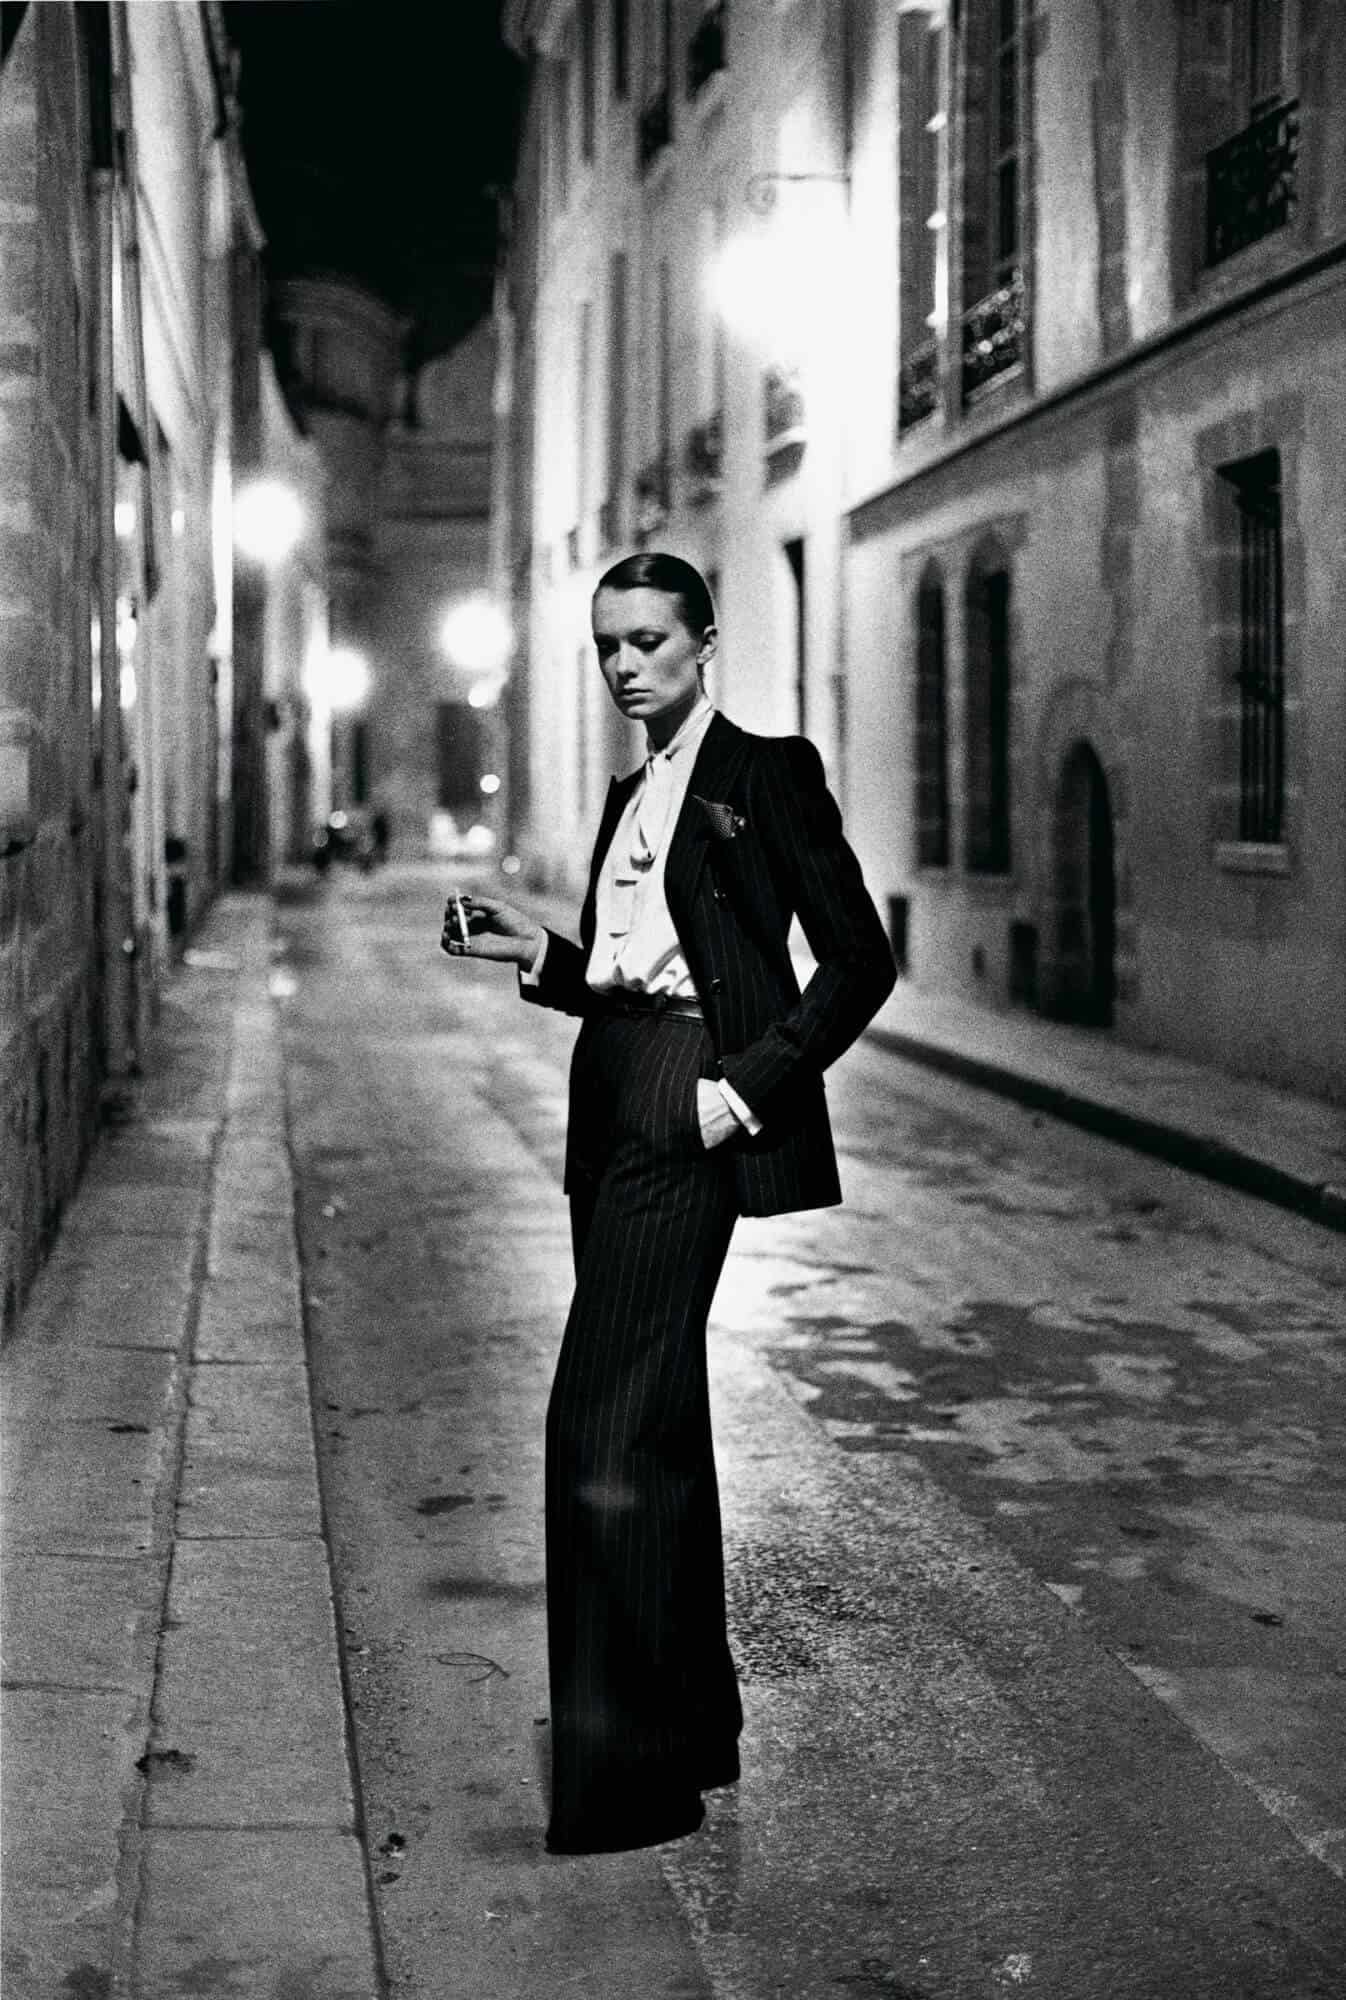 Yves Saint Laurent, French Vogue, Rue Aubriot, Paris 1975 © Helmut Newton / Helmut Newton Estate